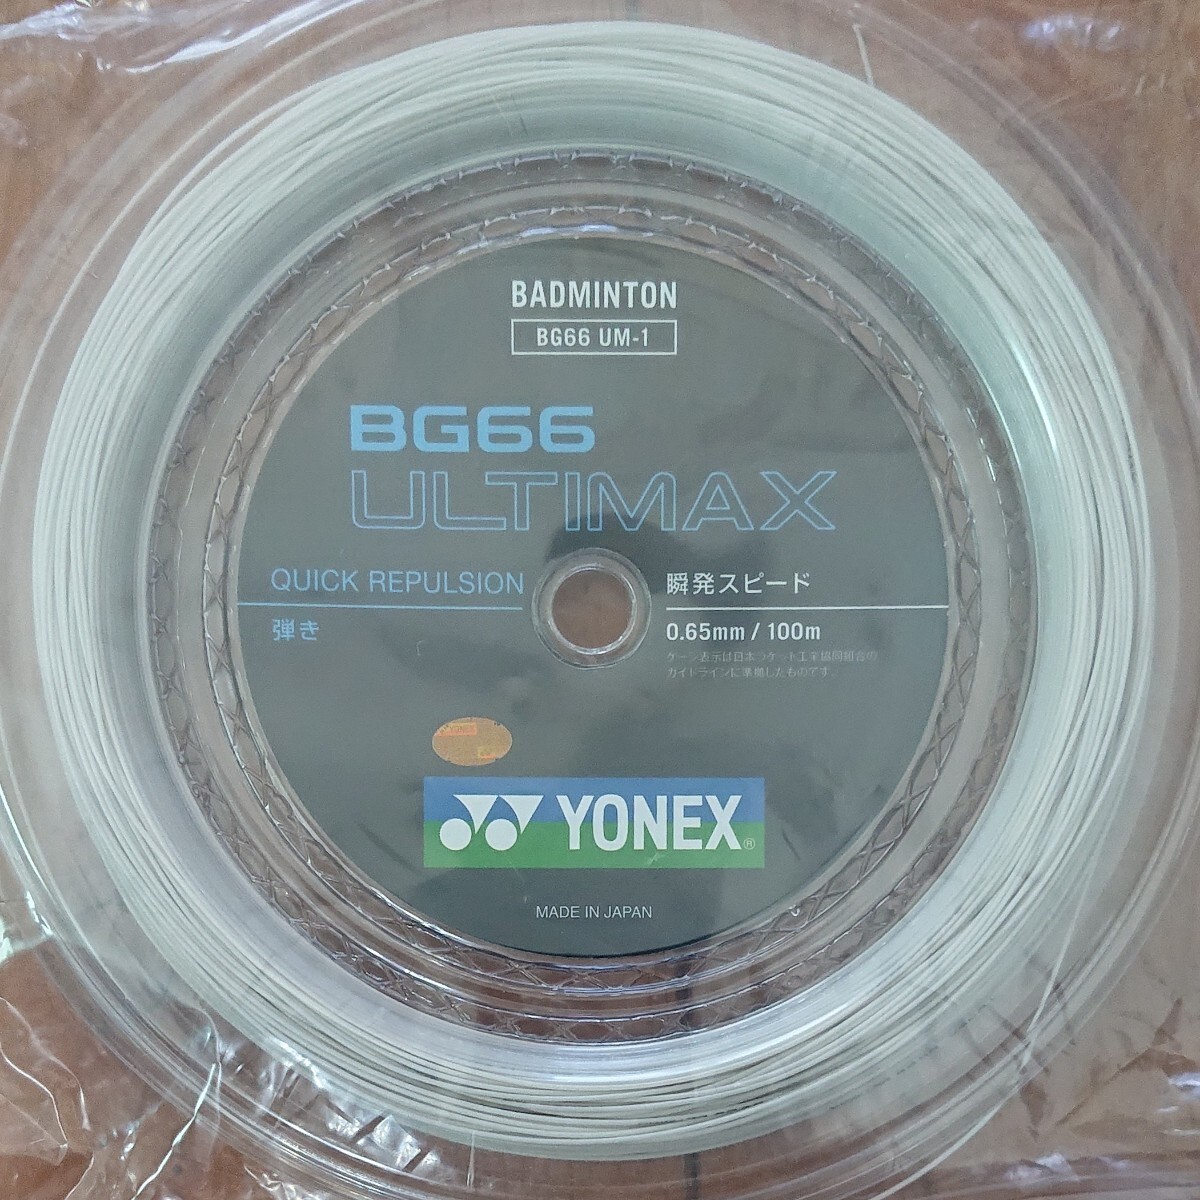  ultima ks(BG66UM-1) 100m roll Yonex (YONEX) цвет : металлик ho wai